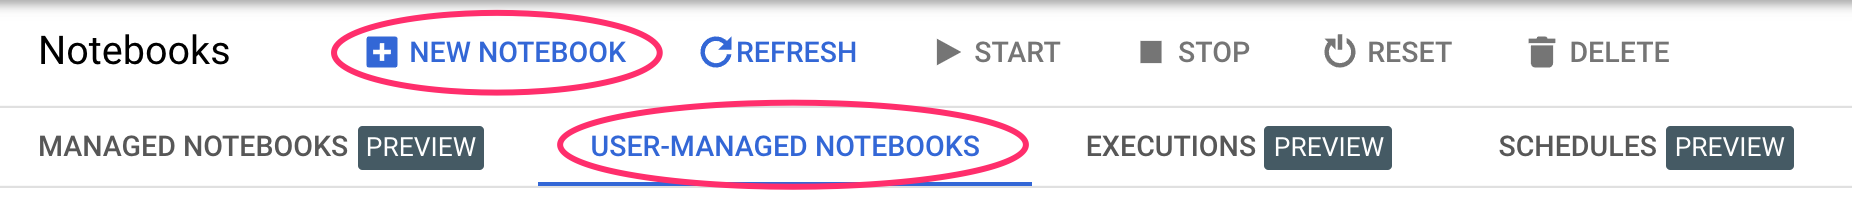 Buat notebook baru